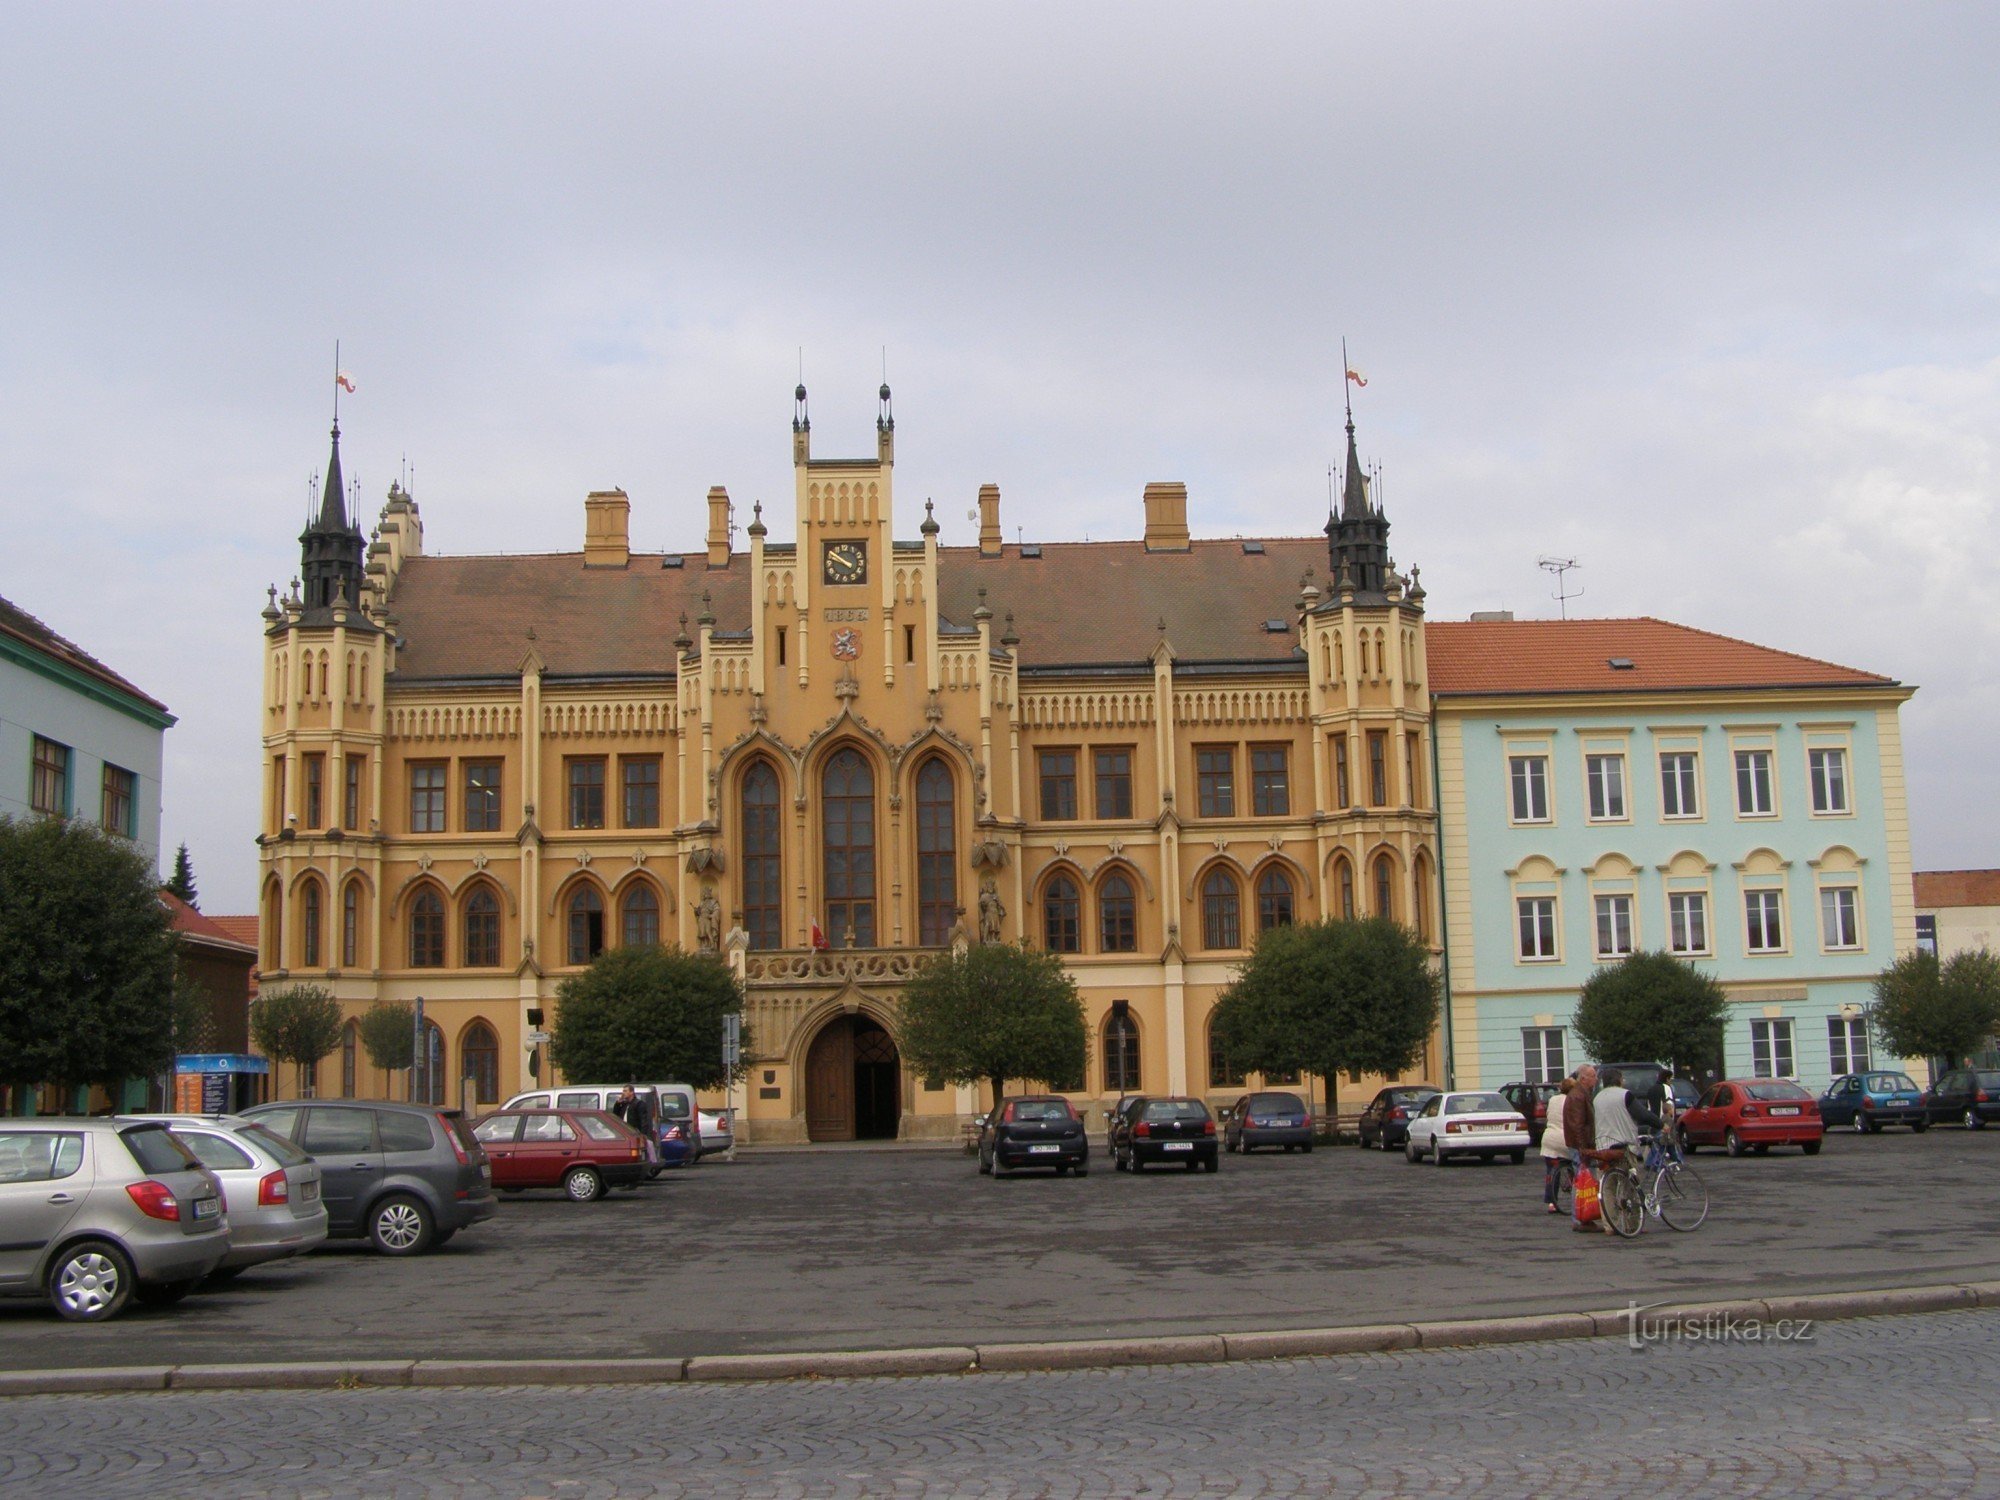 Nový Bydžov - ayuntamiento